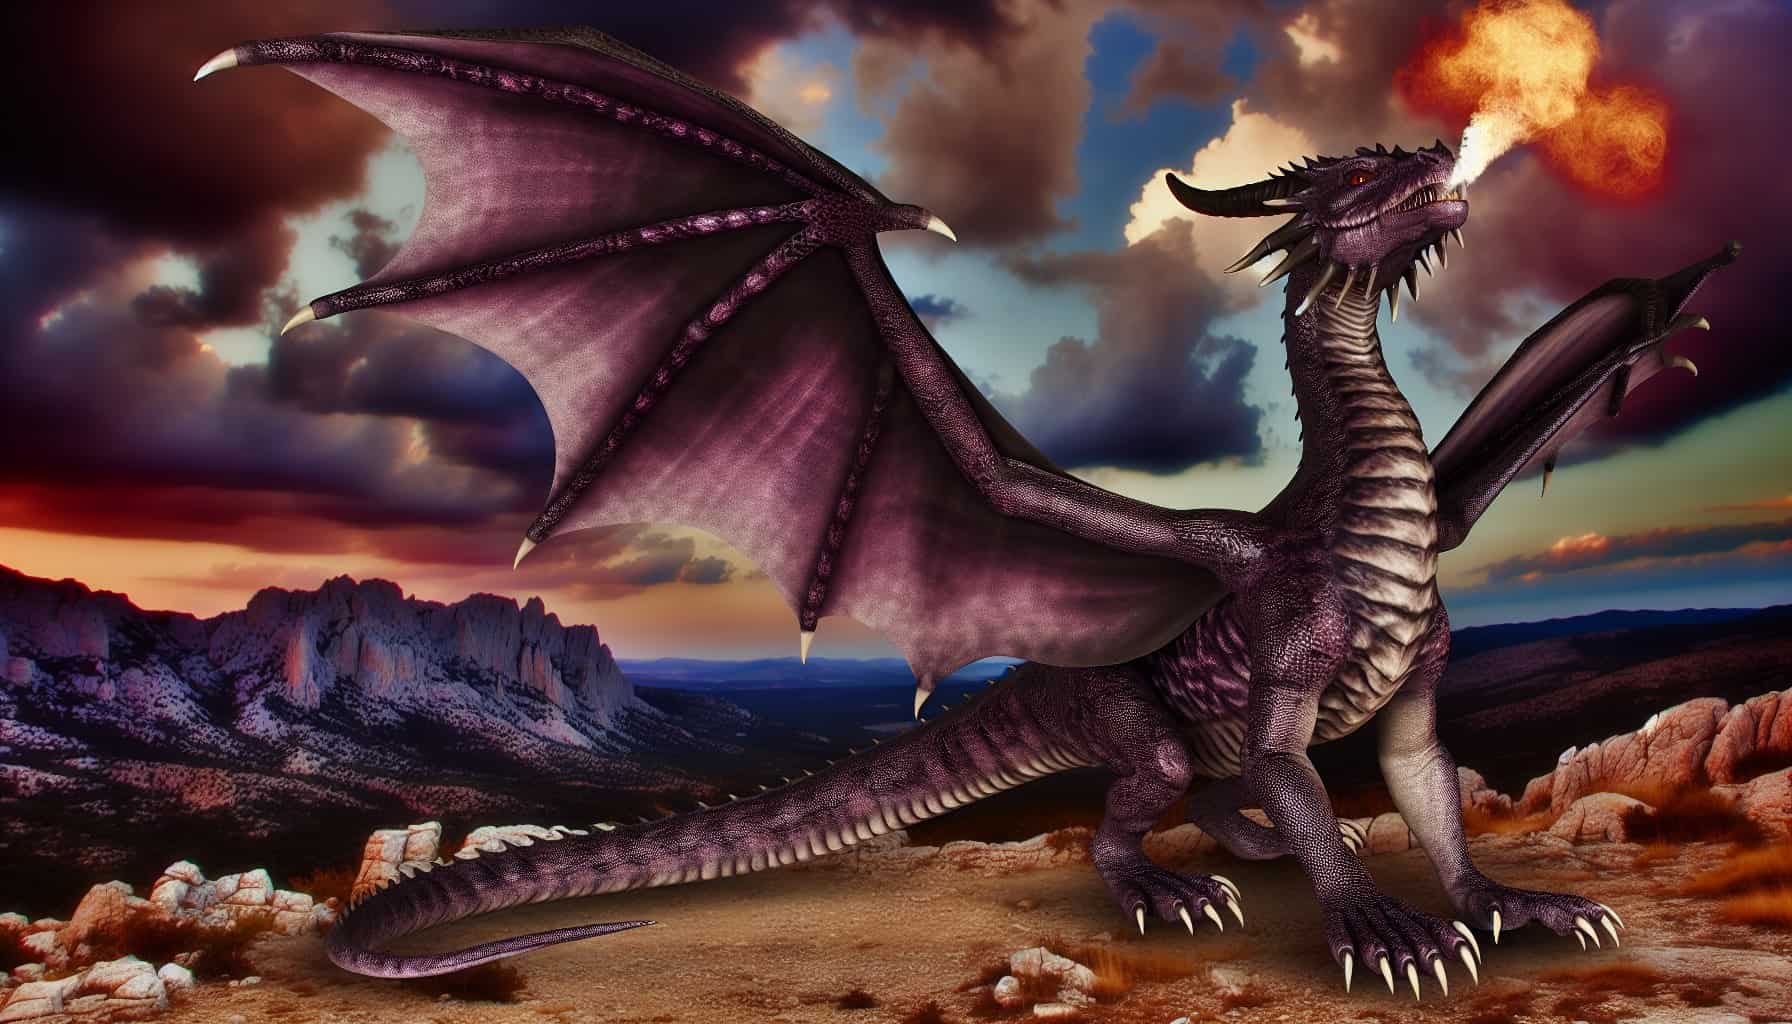 Purple dragon dream meaning - Purple dragon breathing fire